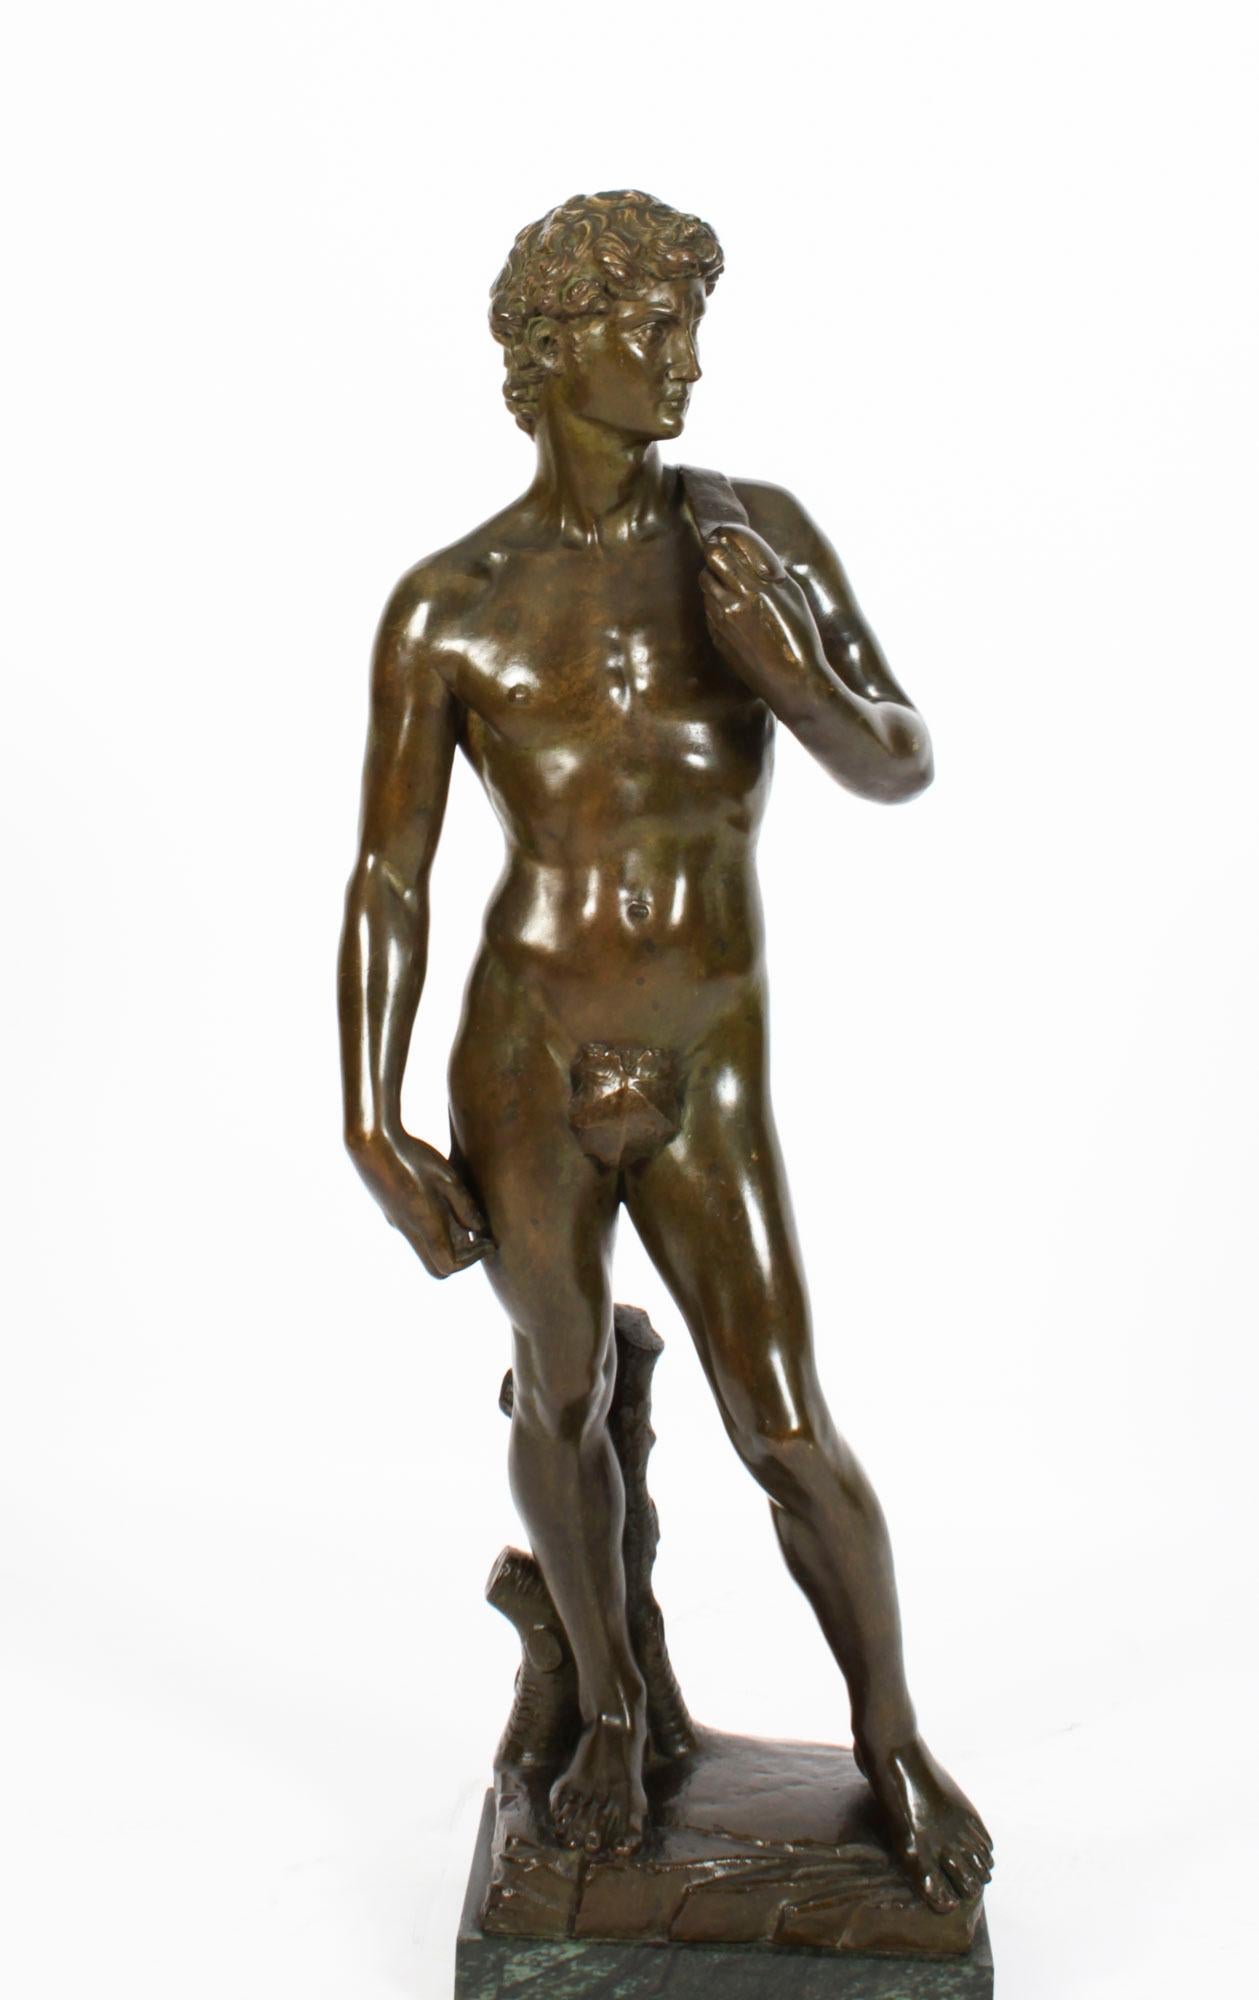 Dies ist eine elegante monumentale Grand-Tour-Bronzeskulptur von  Der David von Michelangelo, datiert um 1880.

Die ganzfigurige Marmorstatue stellt den biblischen Helden David dar, der als stehender männlicher Akt dargestellt ist. David sieht